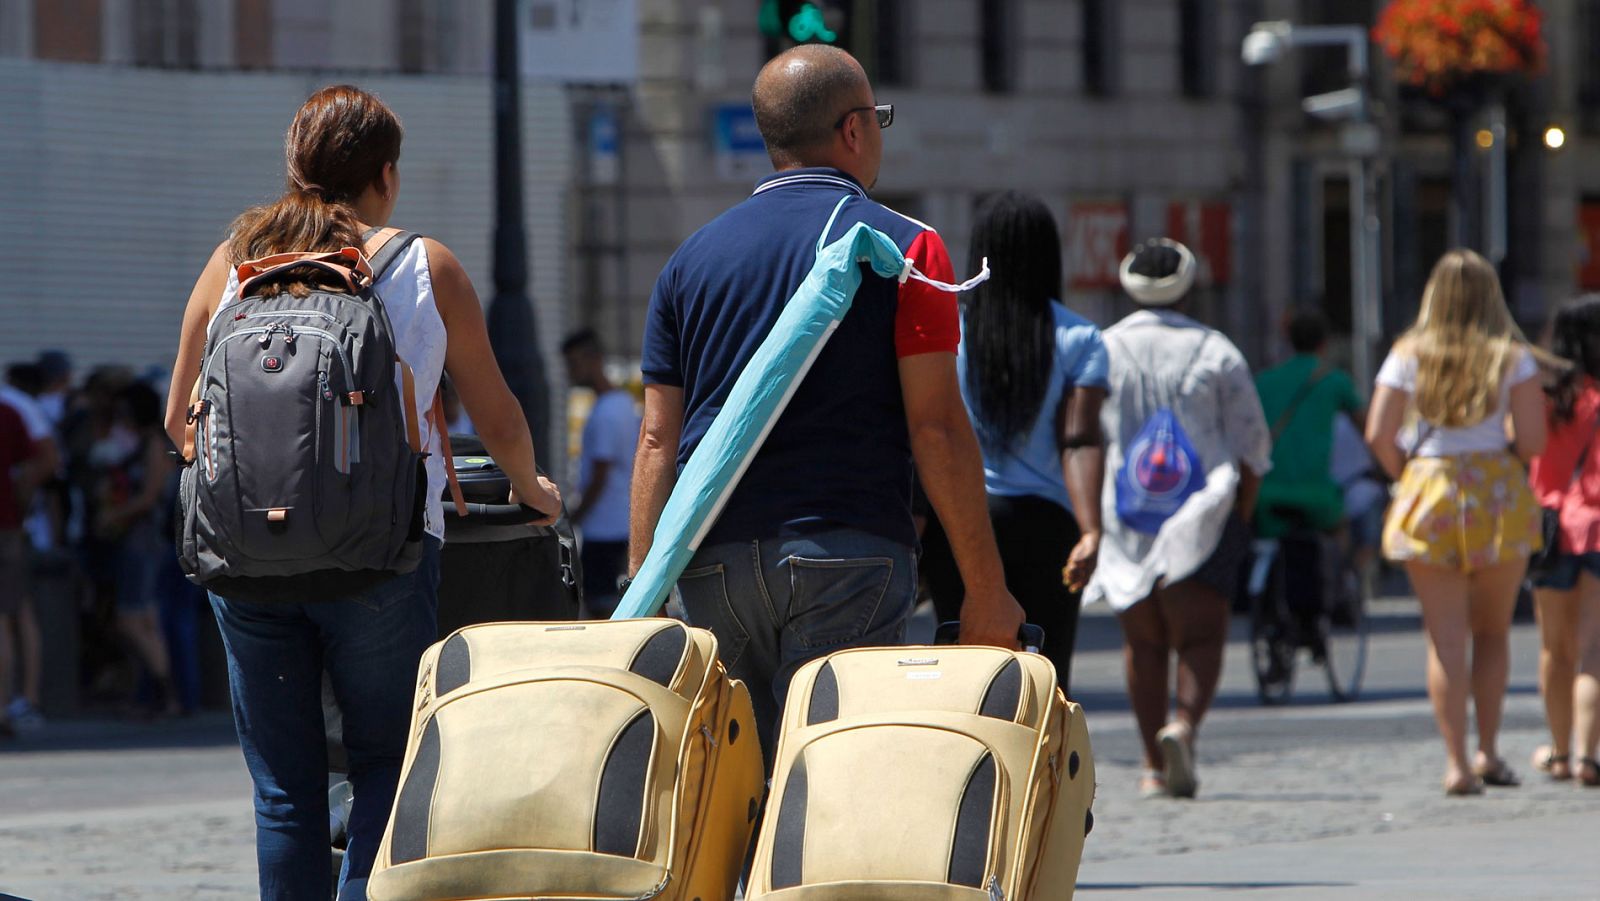 Dos turistas caminan por el centro de madrid con sus maletas